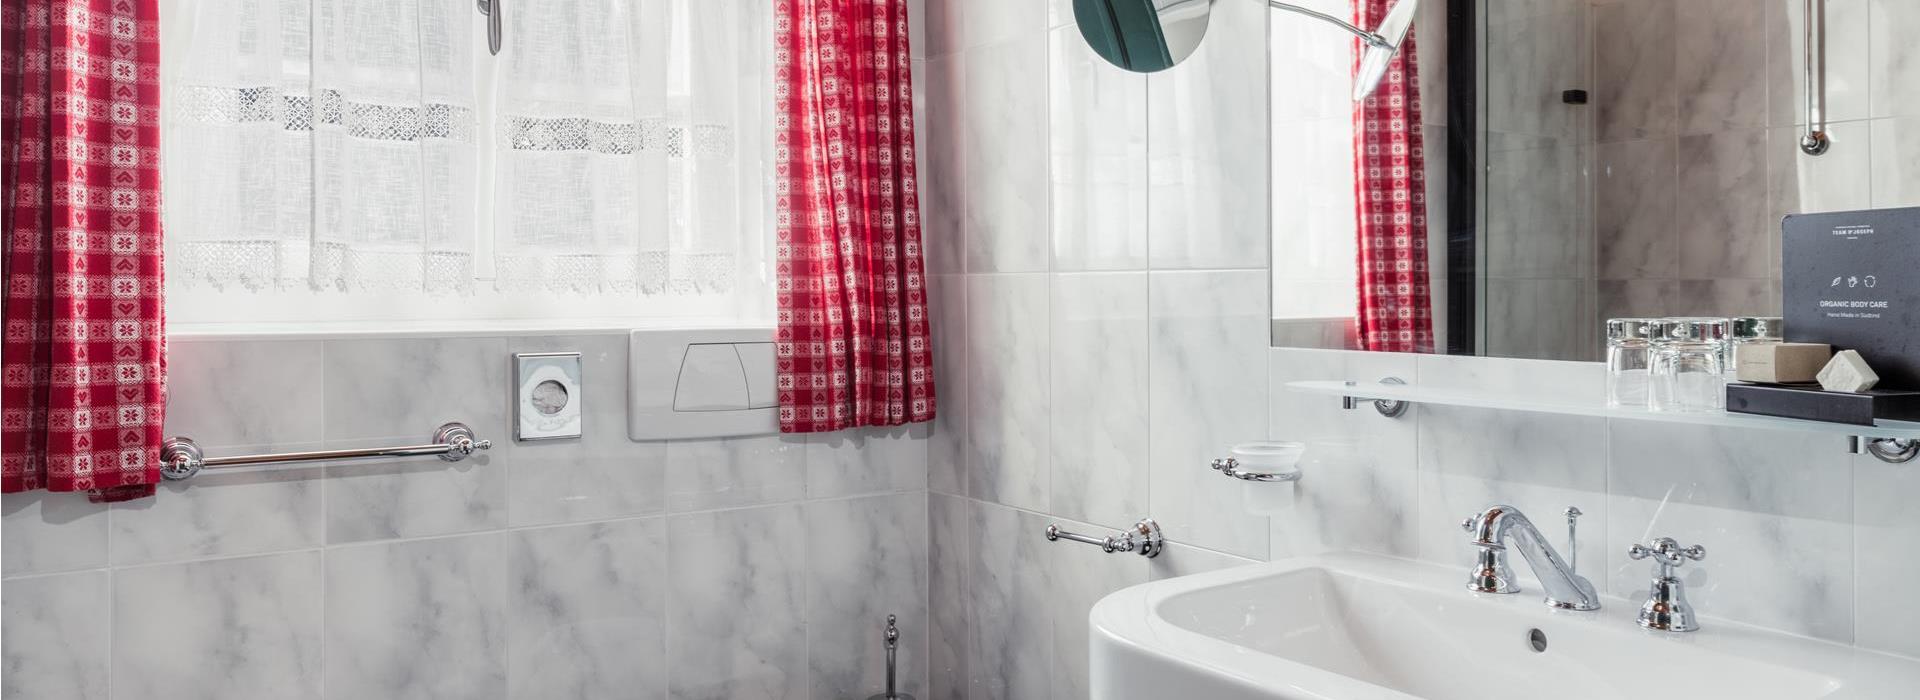 Badezimmer des Romantikzimmer Chalets mit Dusche, Waschbecken, Bidet und WC